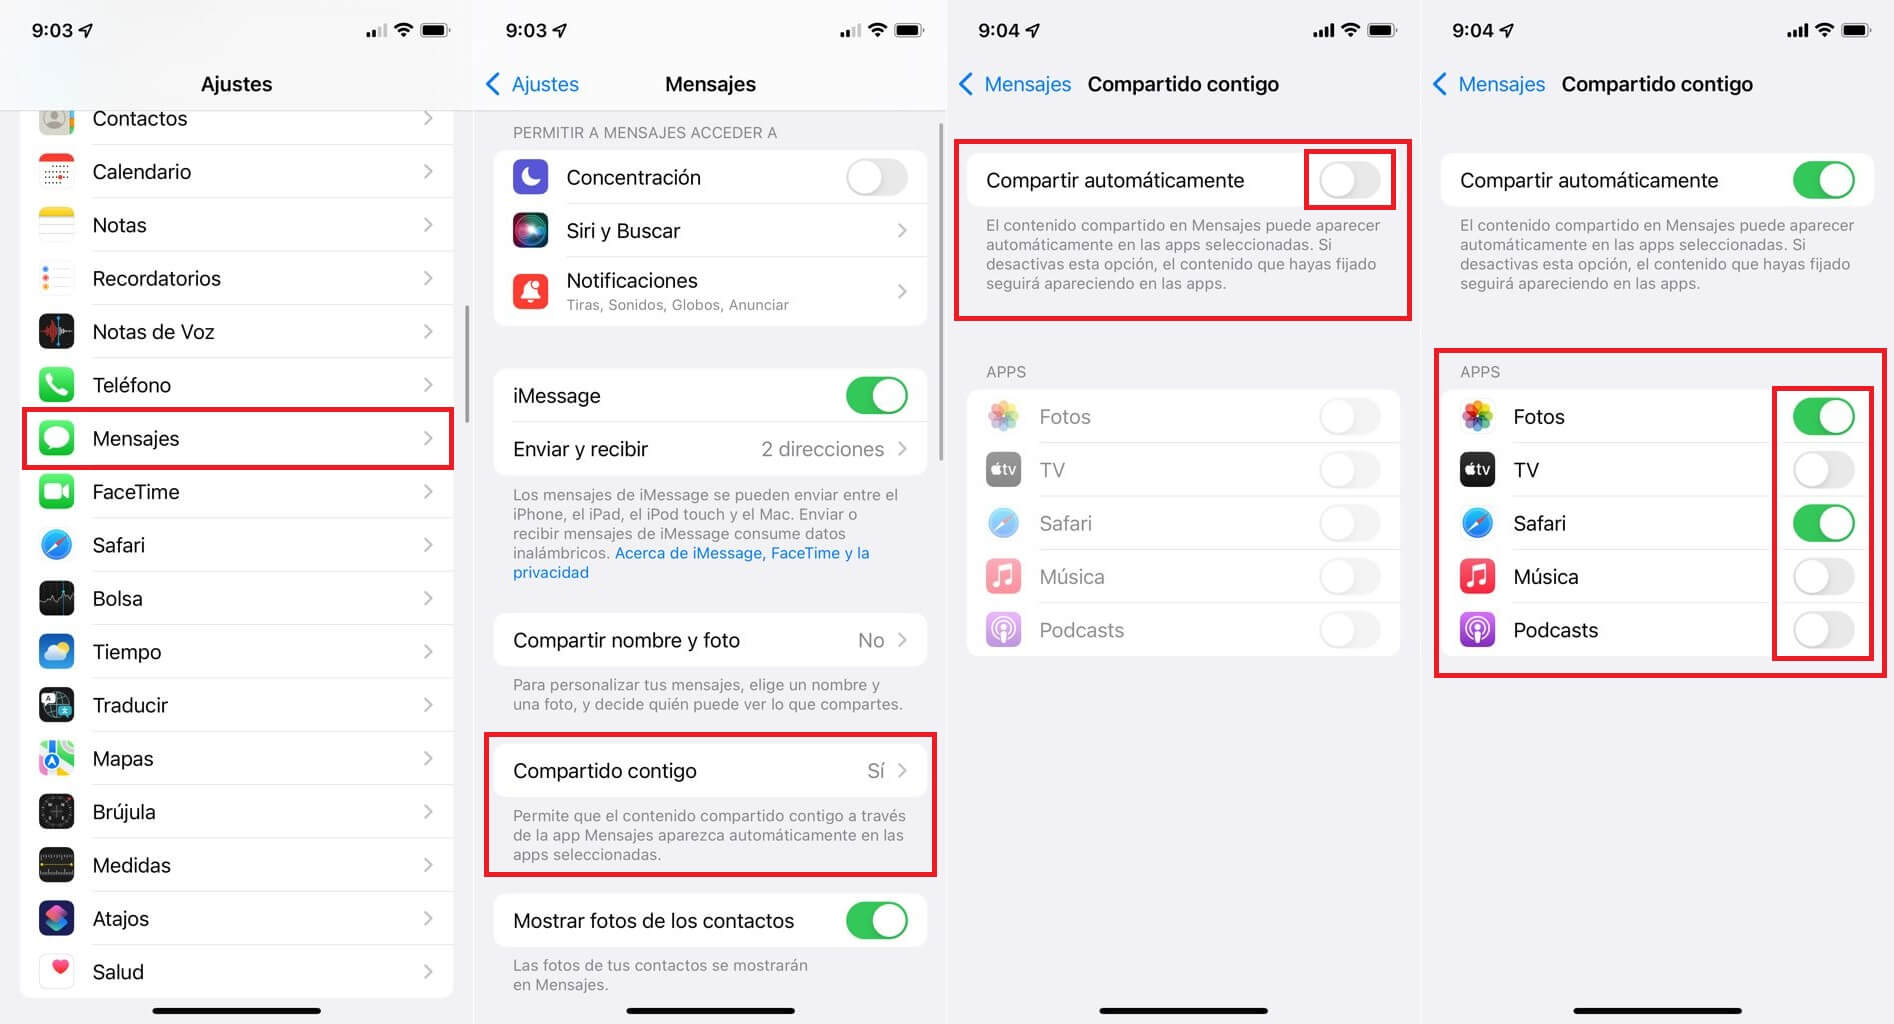 como activar o desactivar la función Compartiendo Contigo de la app Mensajes de iPhone con iOS